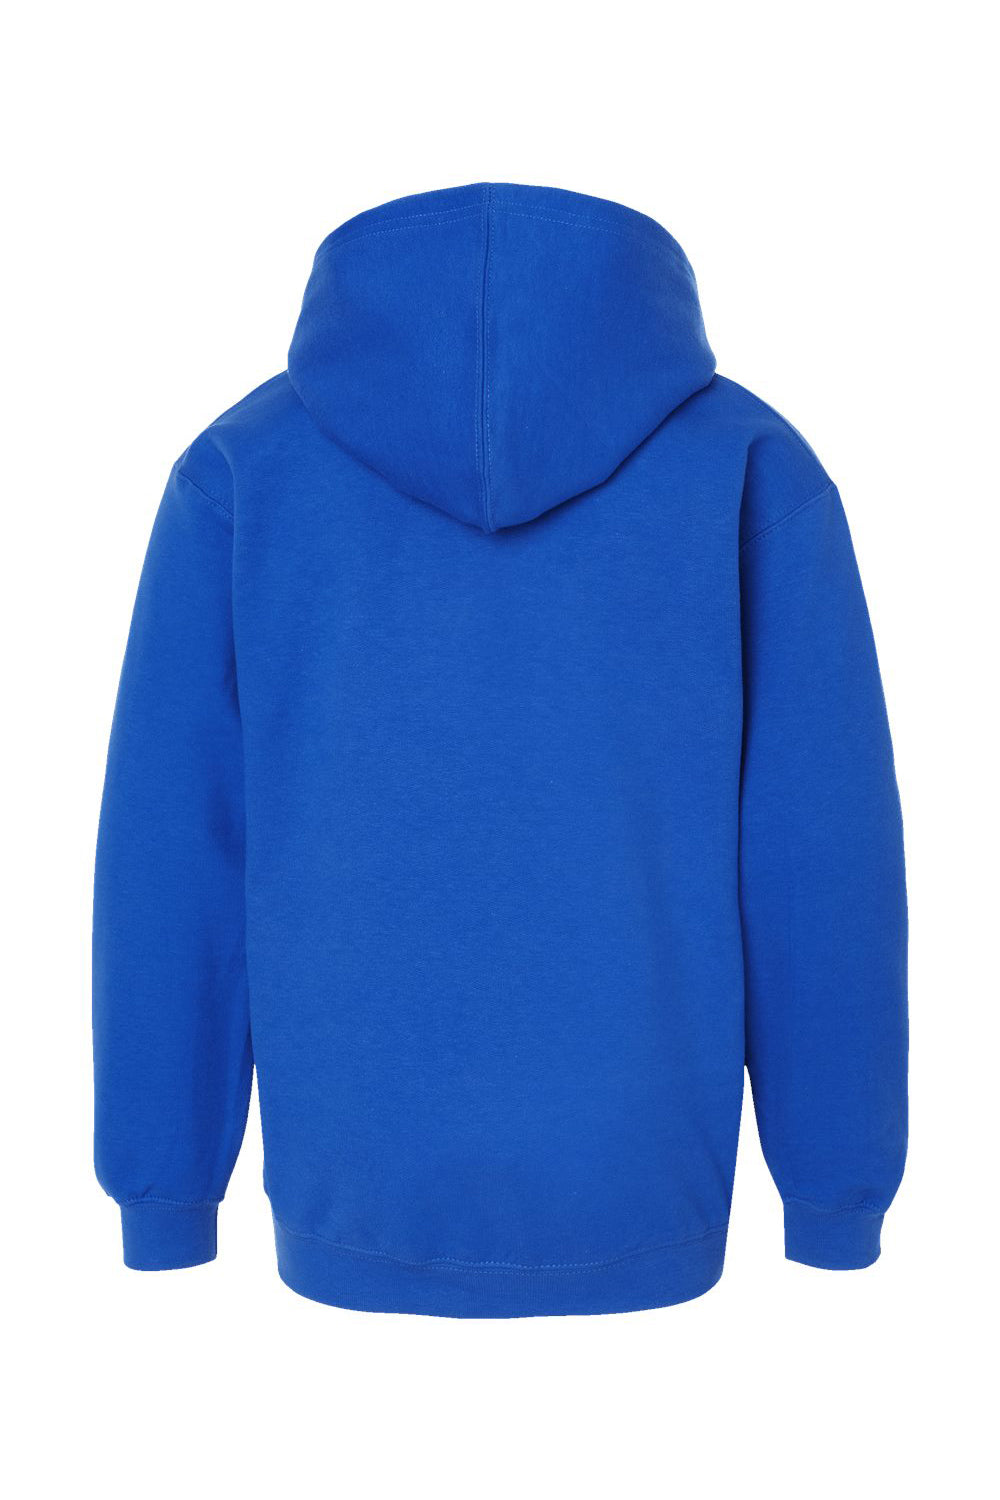 Tultex 320Y Youth Hooded Sweatshirt Hoodie Royal Blue Flat Back